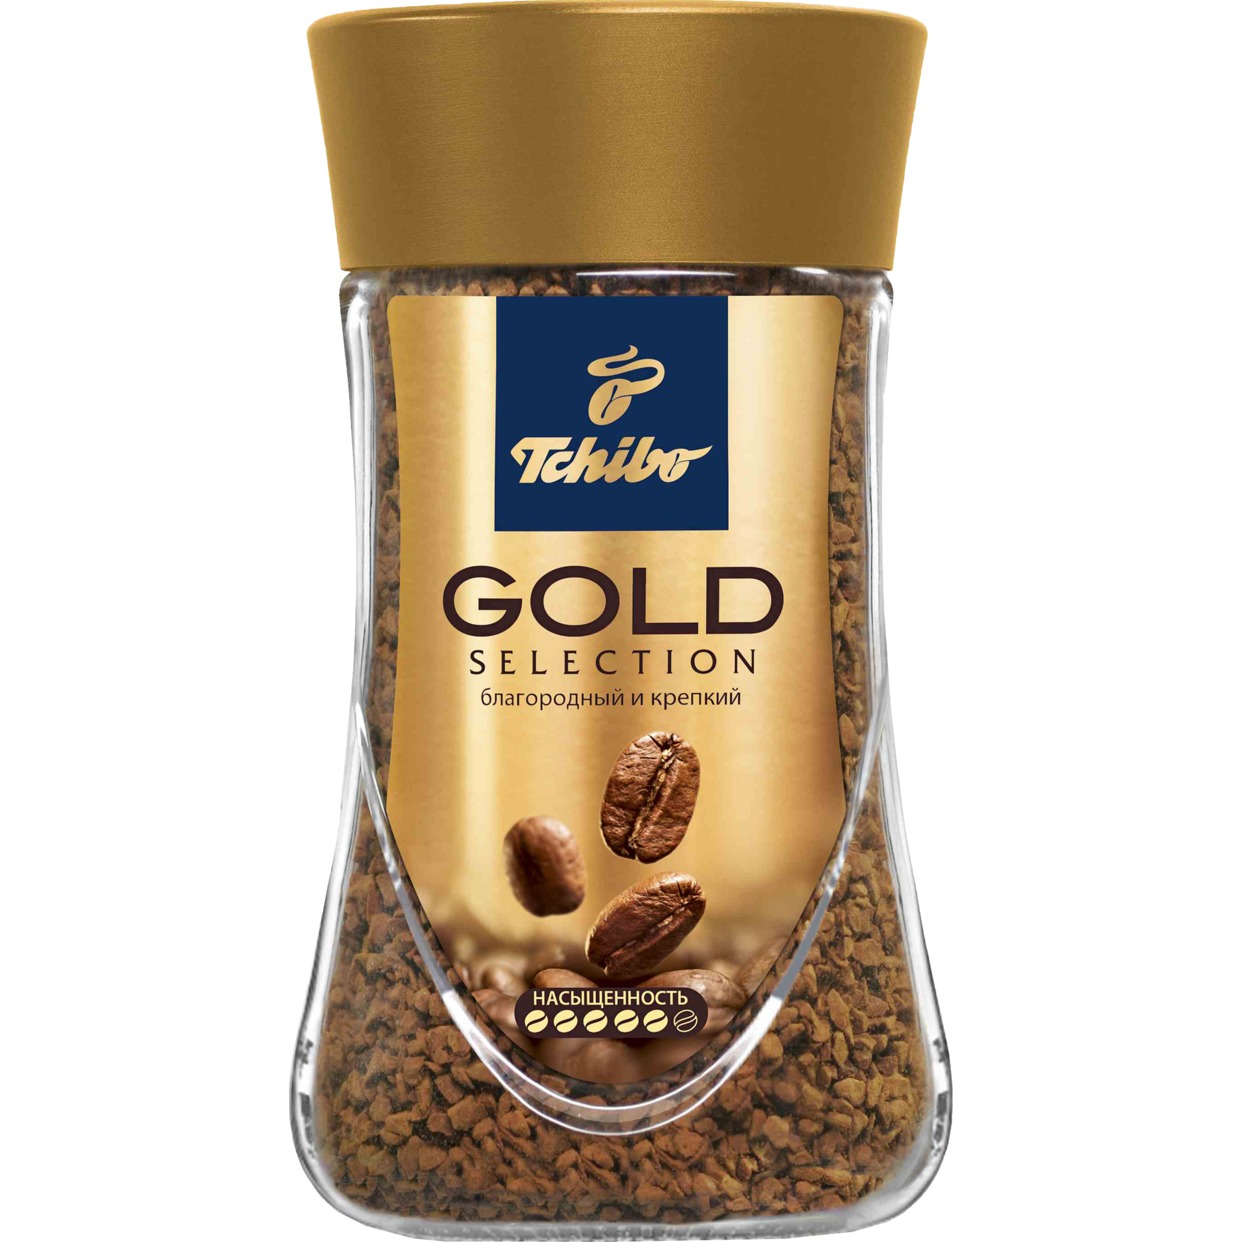 Кофе Gold Select, растворимый, Tchibo, 95 г